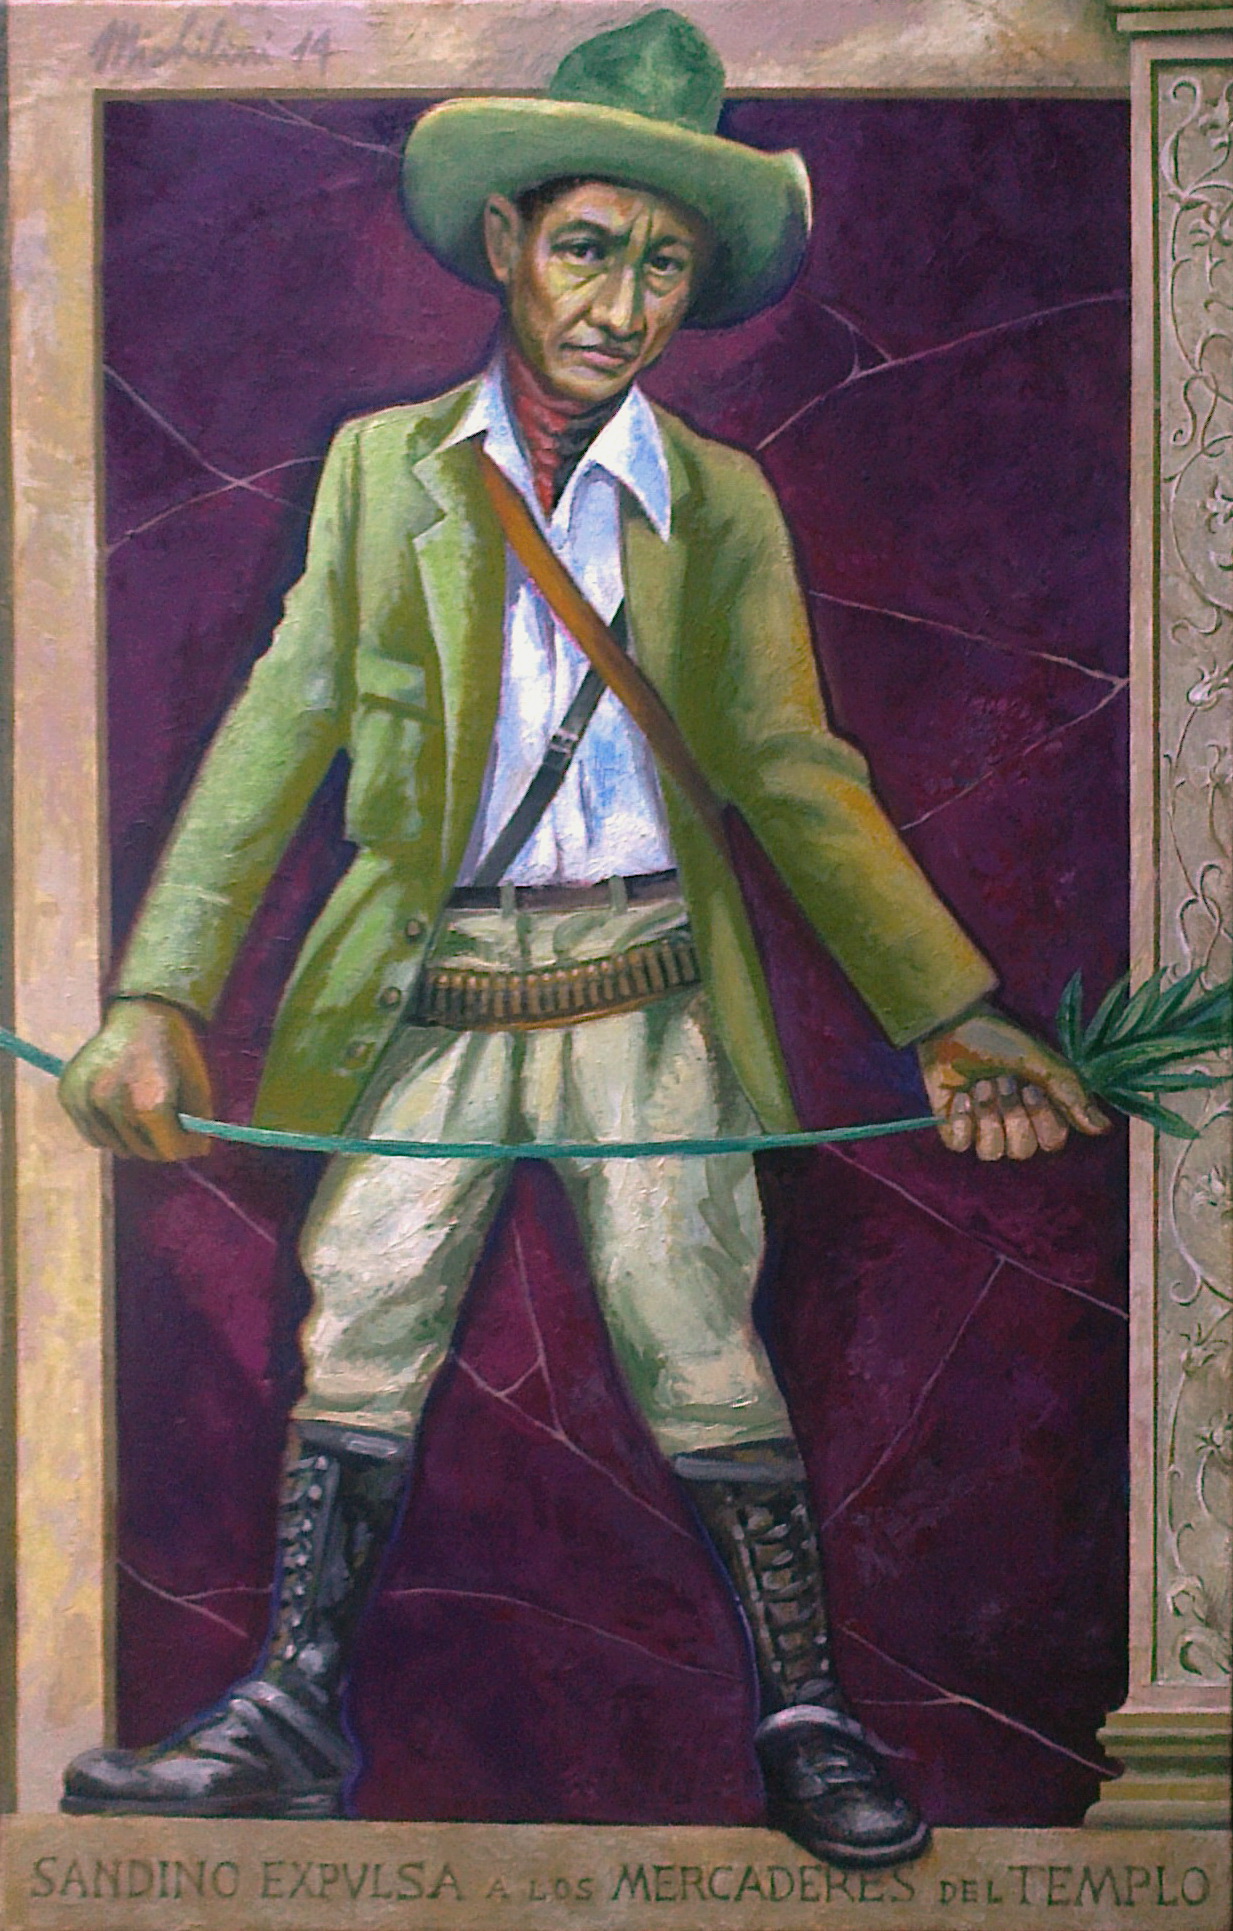 Sergio Michilini, SANDINO EXPULSA A LOS MERCADERES DEL TEMPLO, 2014, oleo sobre tela, cm.110x70